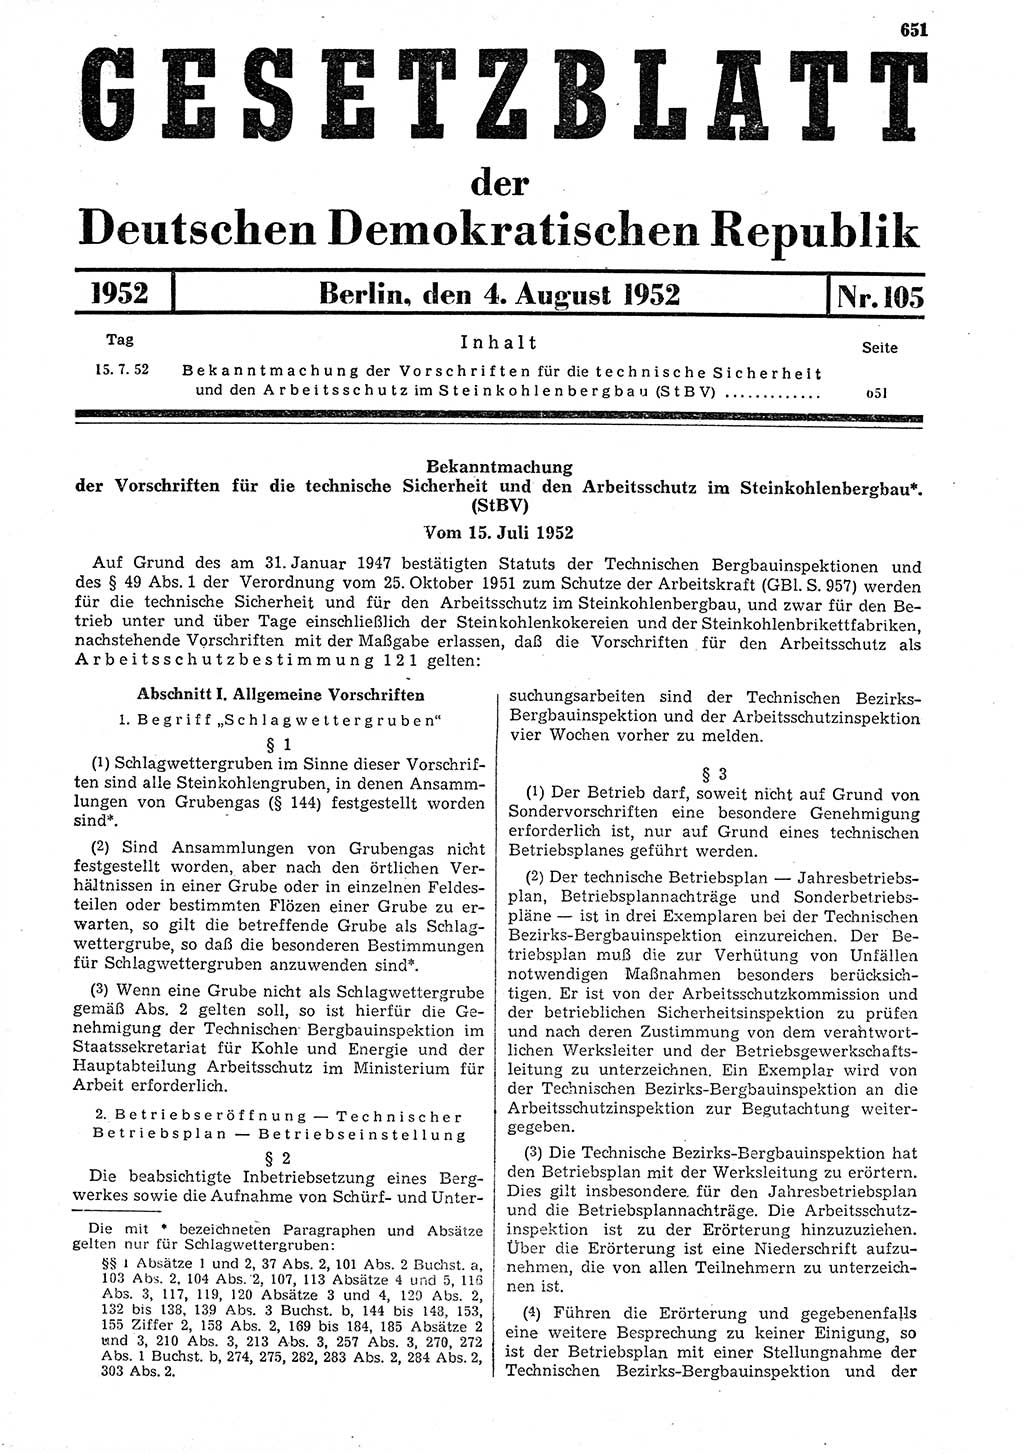 Gesetzblatt (GBl.) der Deutschen Demokratischen Republik (DDR) 1952, Seite 651 (GBl. DDR 1952, S. 651)